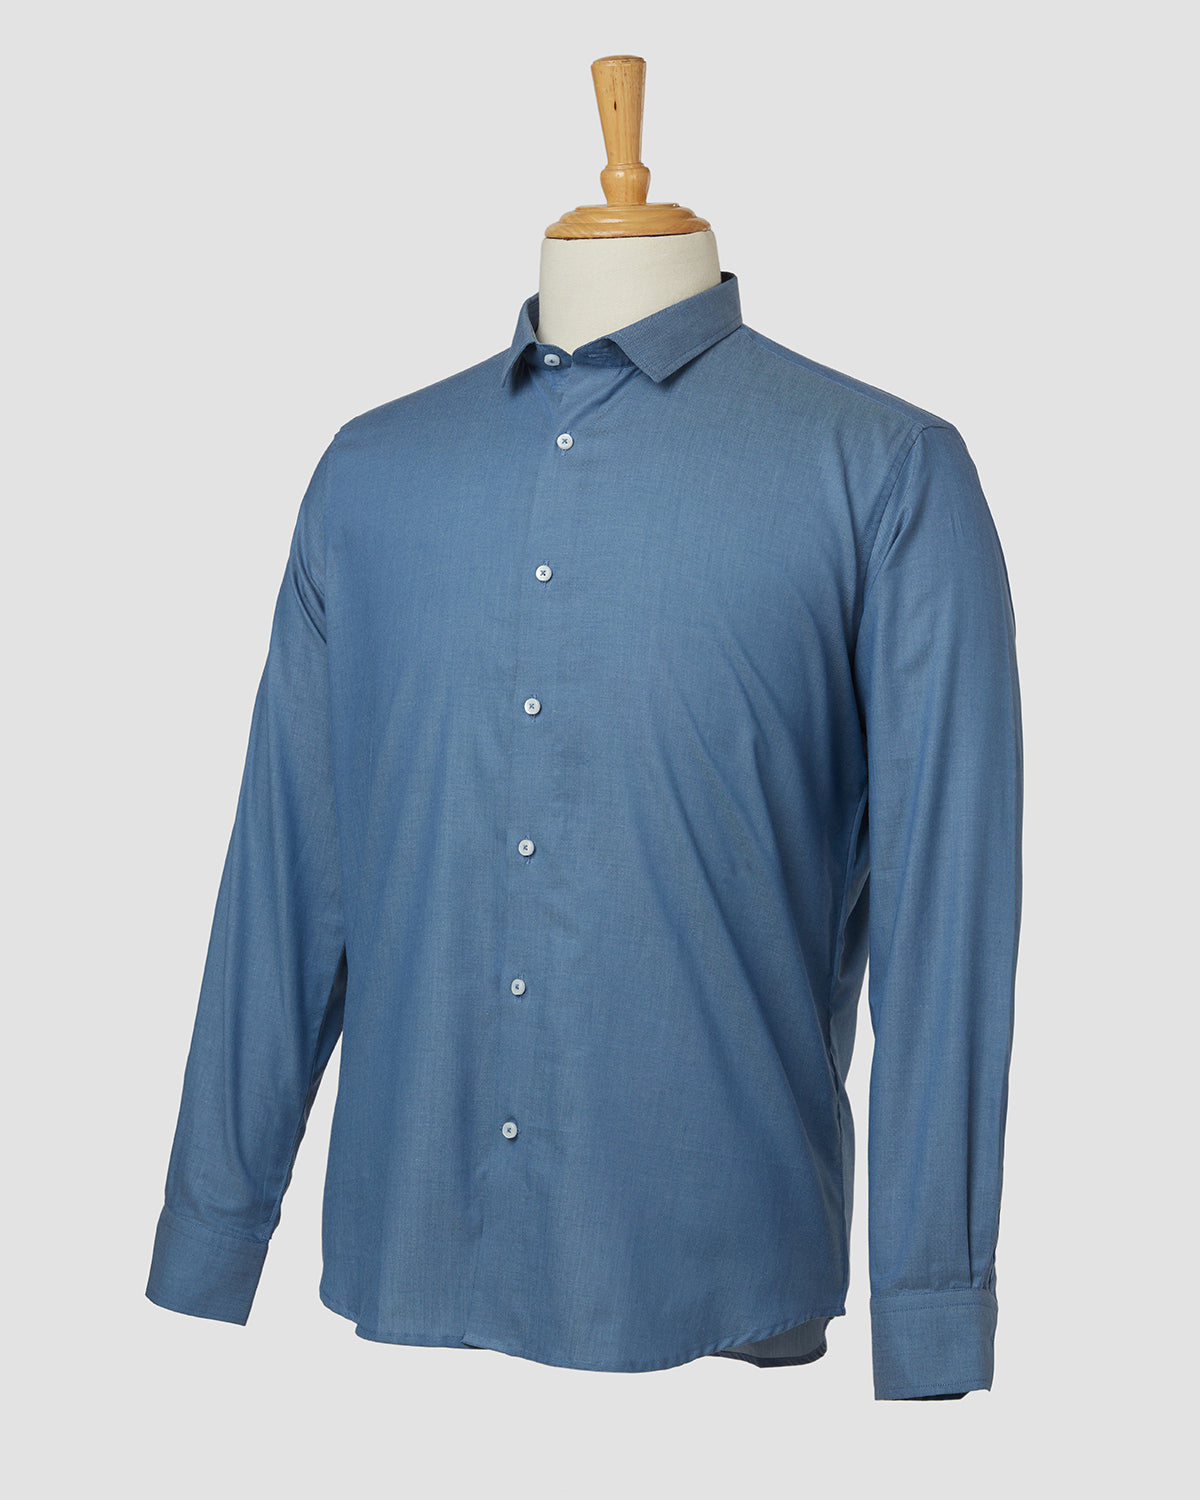 Bombay Shirt Company - Thomas Mason Frosty Twill Shirt